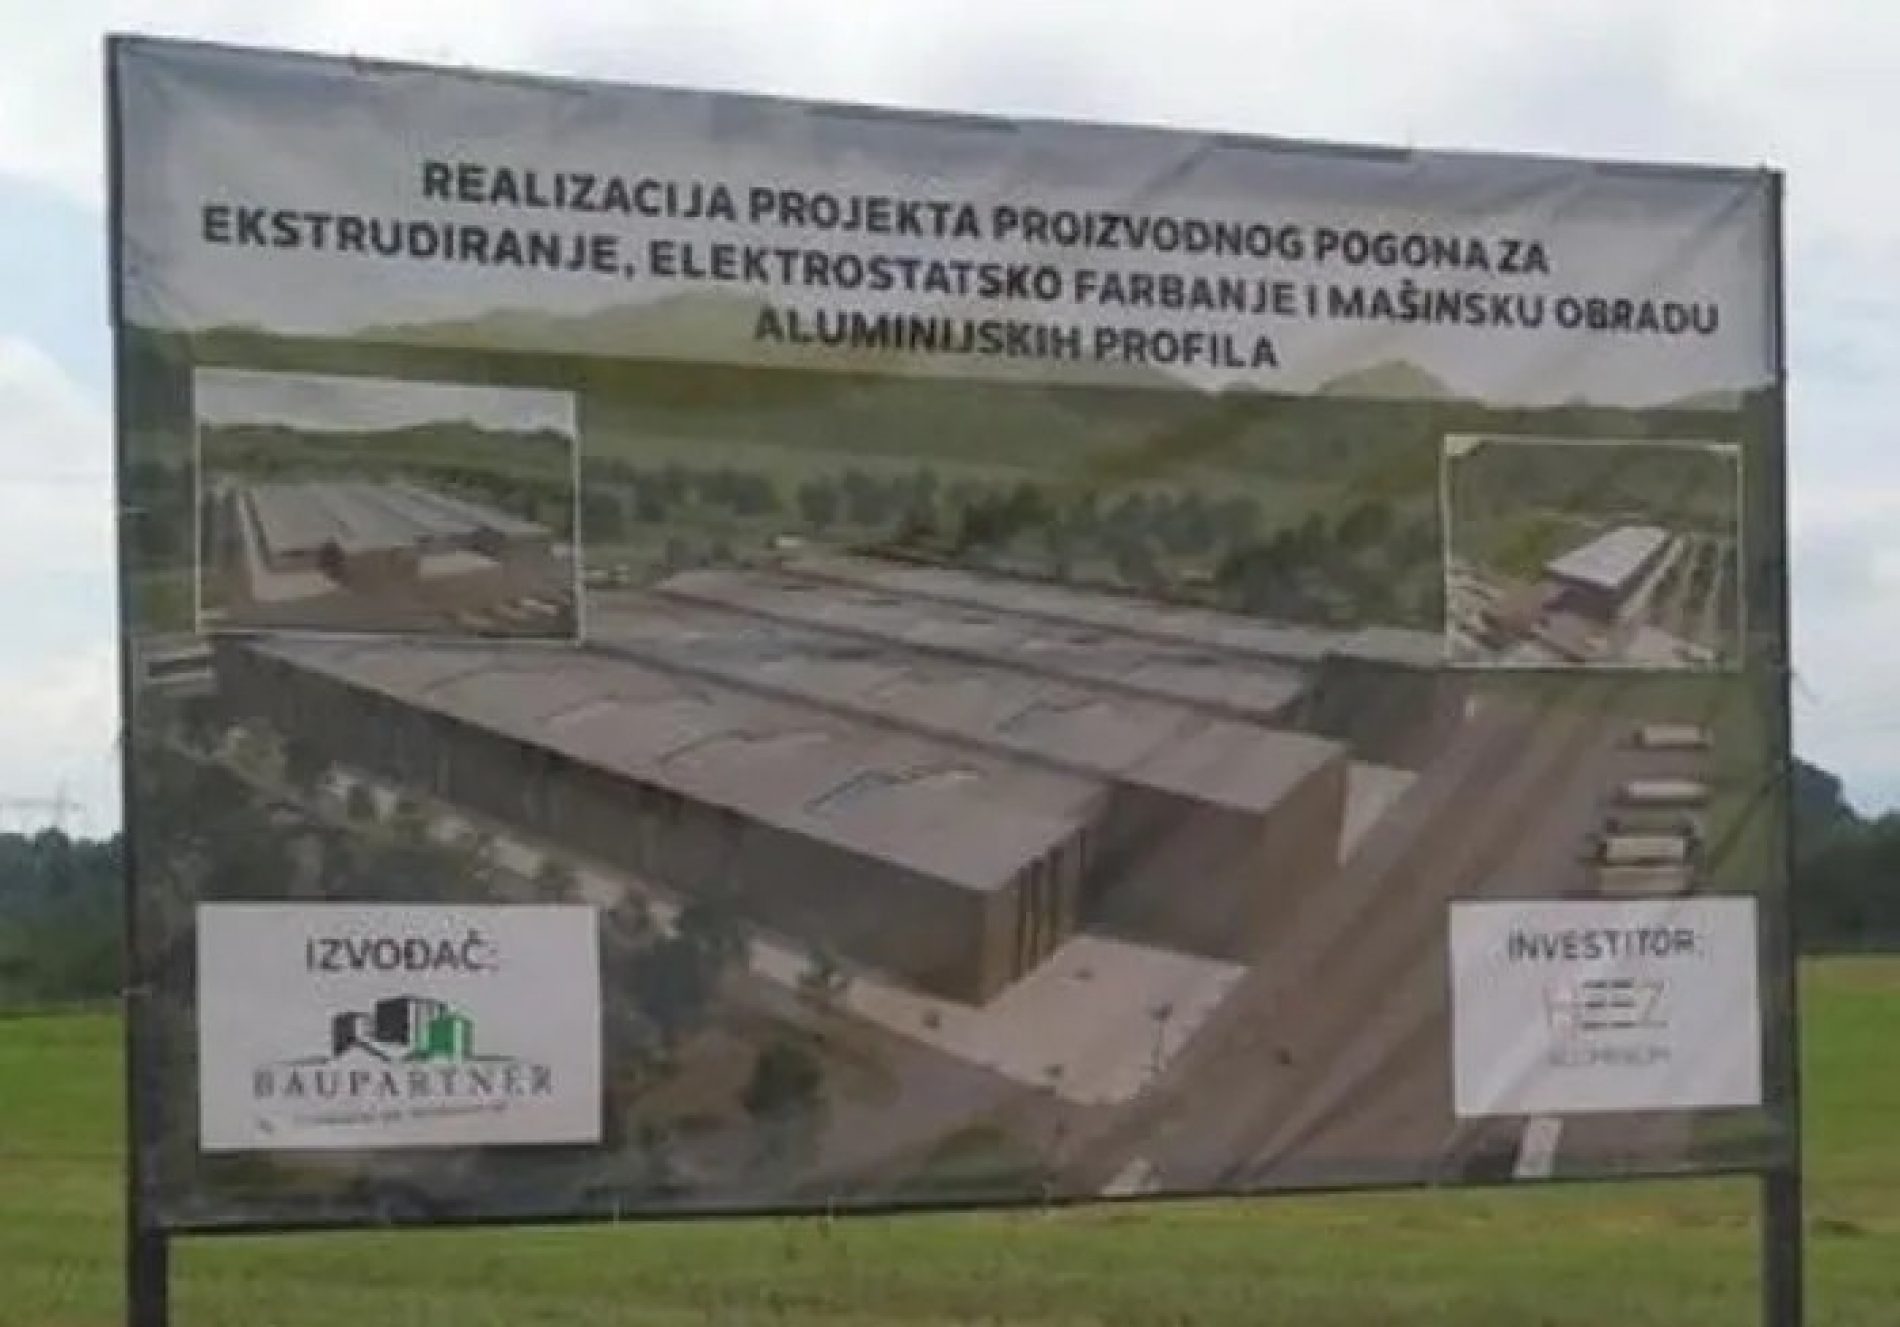 Domaća kompanija gradi proizvodni pogon u Brčkom – investicija u iznosu od 35 miliona KM